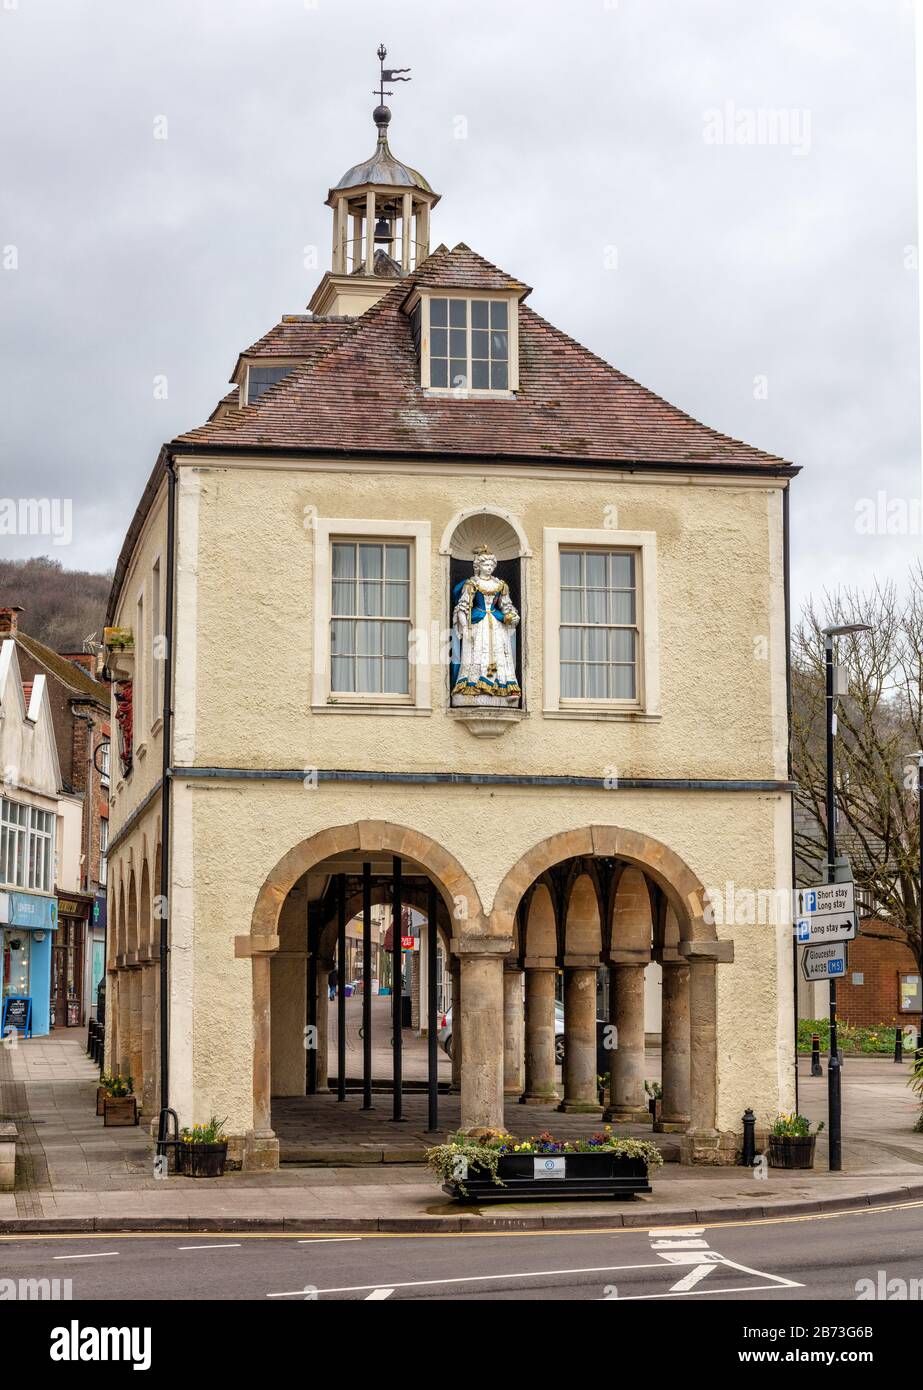 La Maison du marché du XVIIIe siècle avec statue de la reine Anne à Durrley, Gloucestershire, Angleterre, Royaume-Uni Banque D'Images